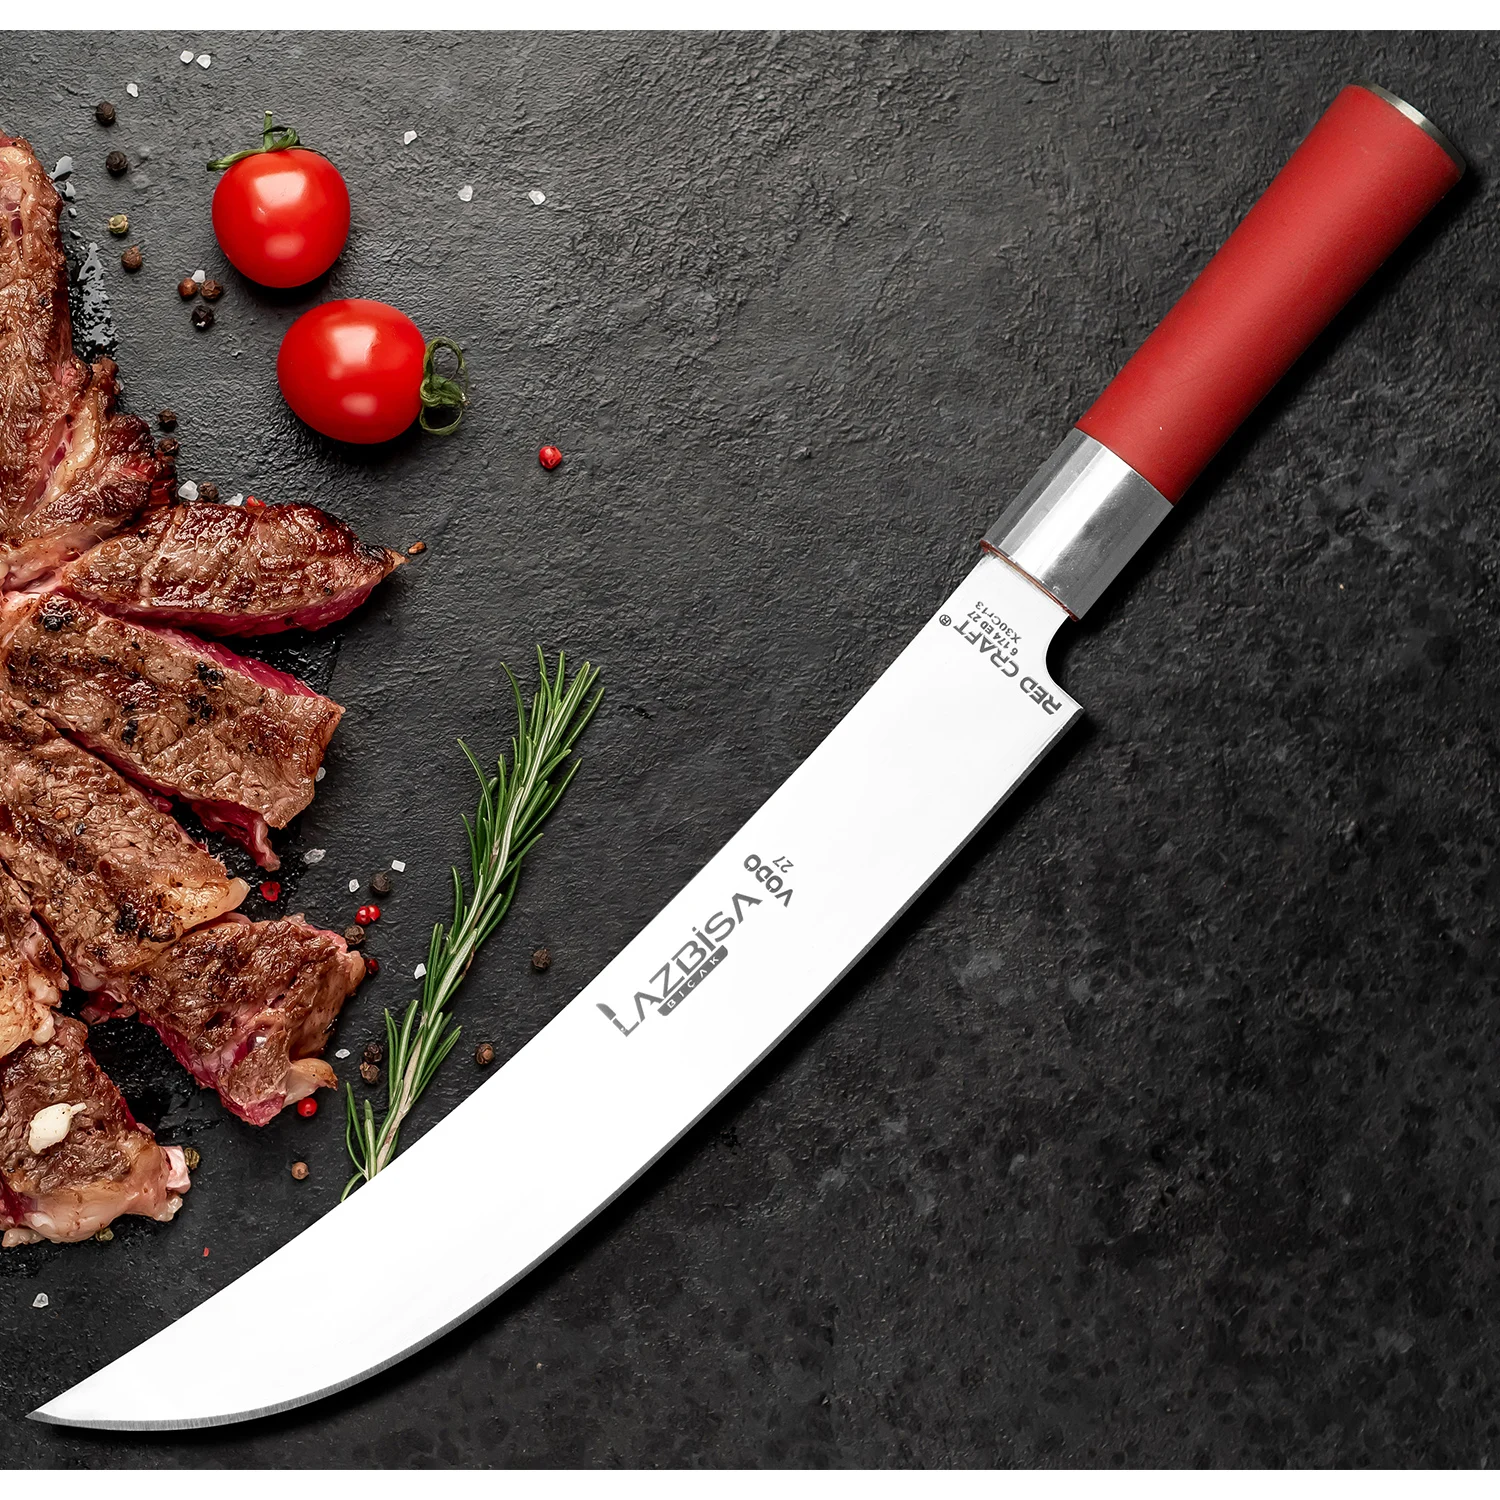 

Набор кухонных ножей, нож шеф-повара (VODO) для мяса, костей, овощей, хлеба, фруктов, серии Red Craft